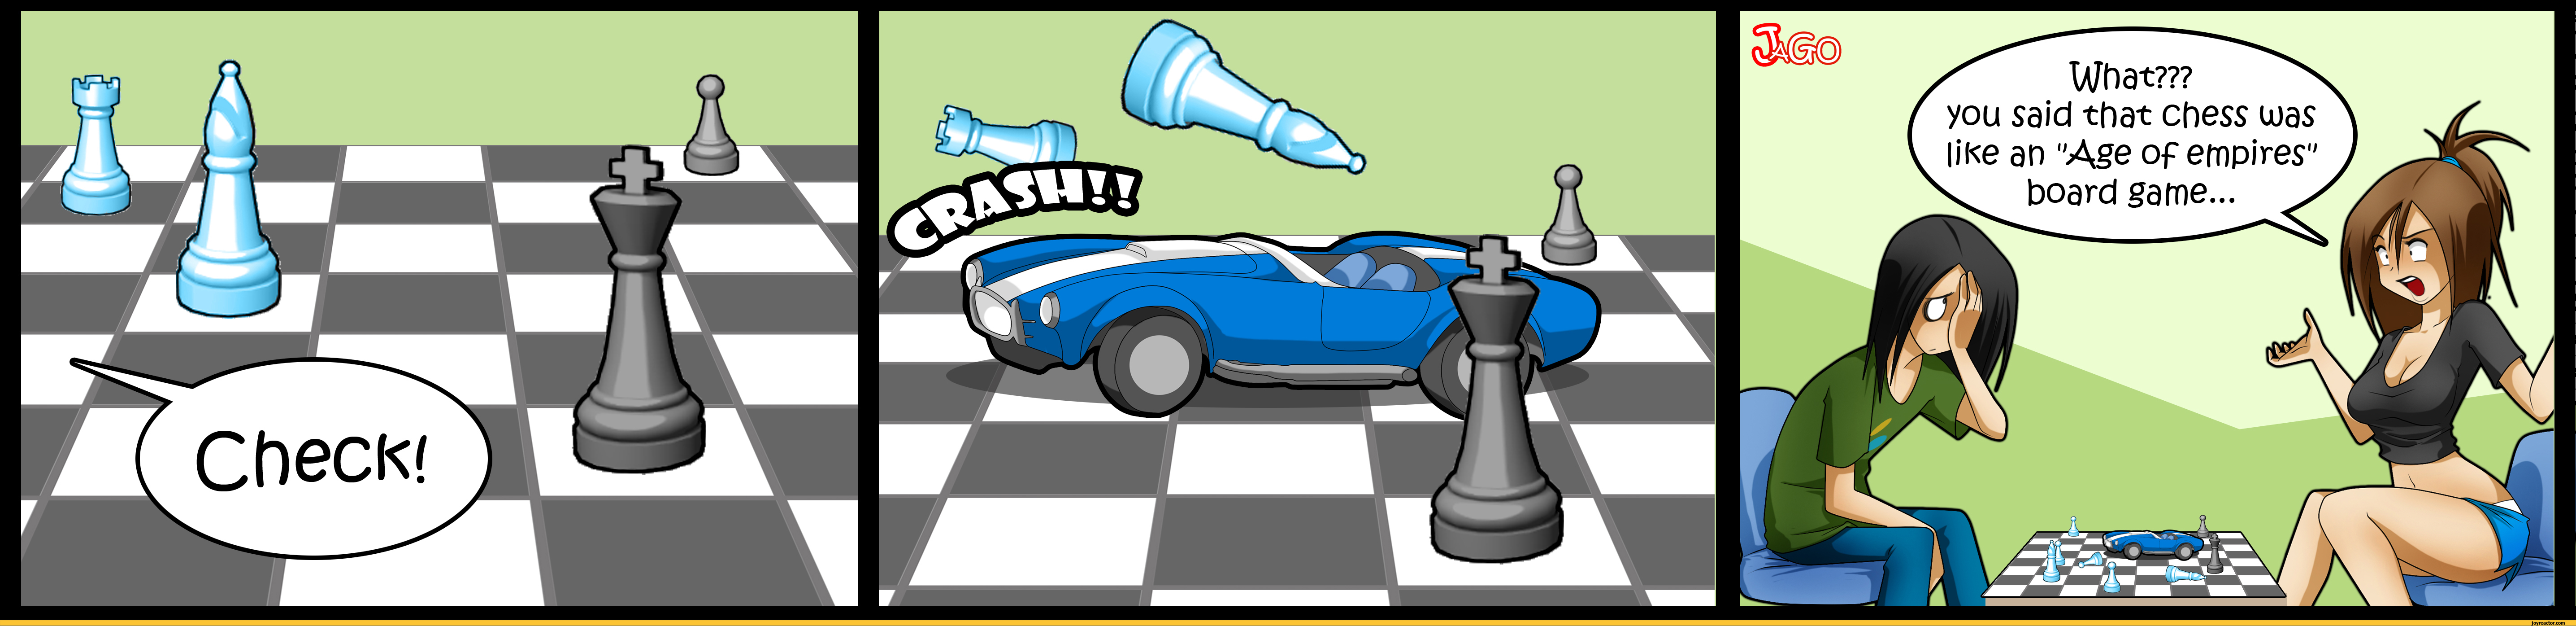 comics-JaGo-chess-age-of-empires-687230.jpeg